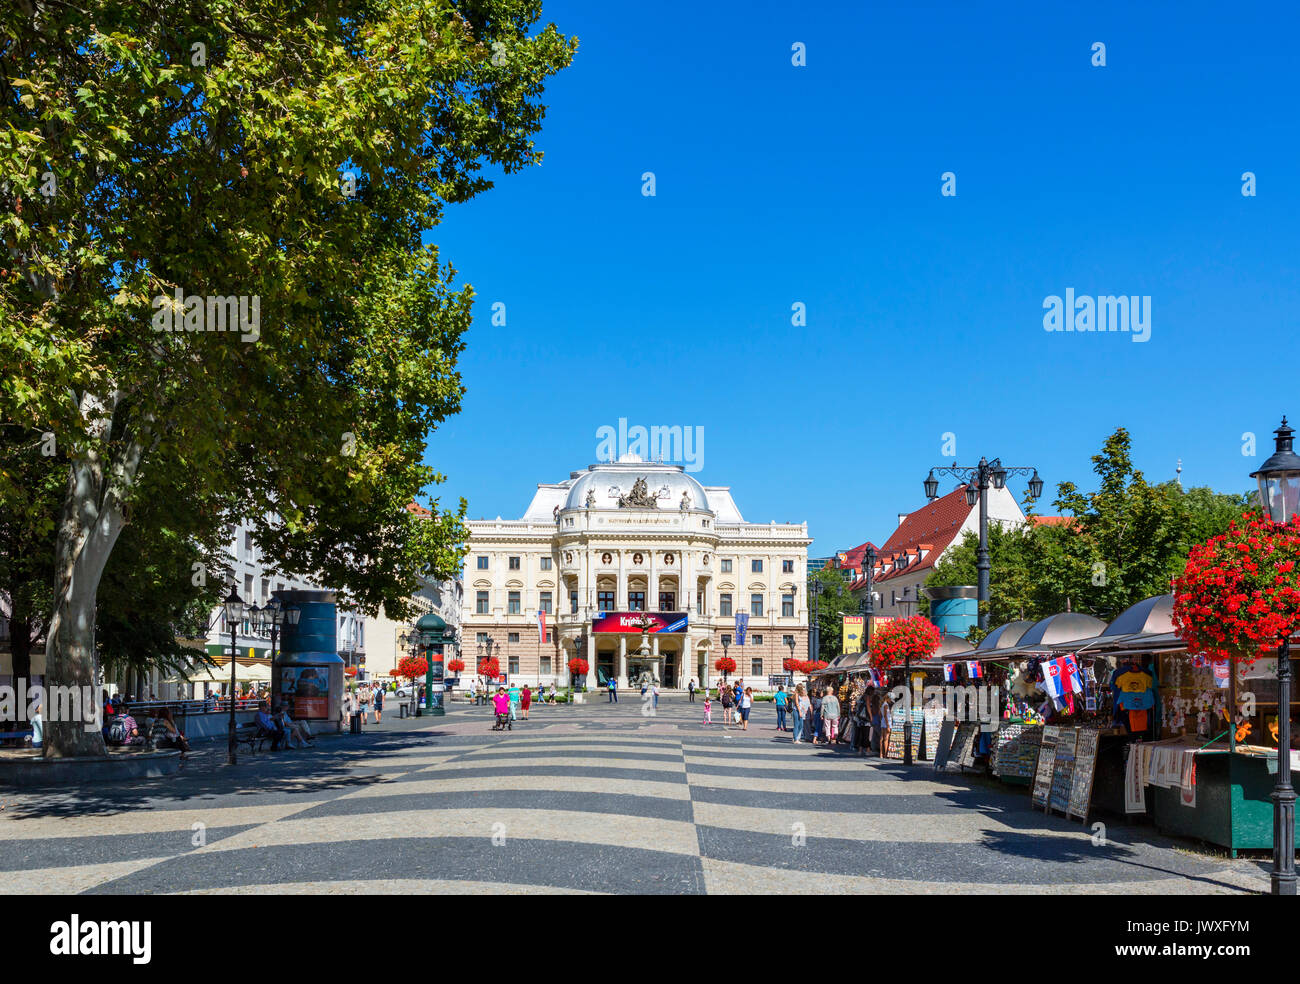 Teatro nazionale slovacco, Hviezdoslavovo námestie (Hviezdoslav Square), Bratislava, Slovacchia Foto Stock